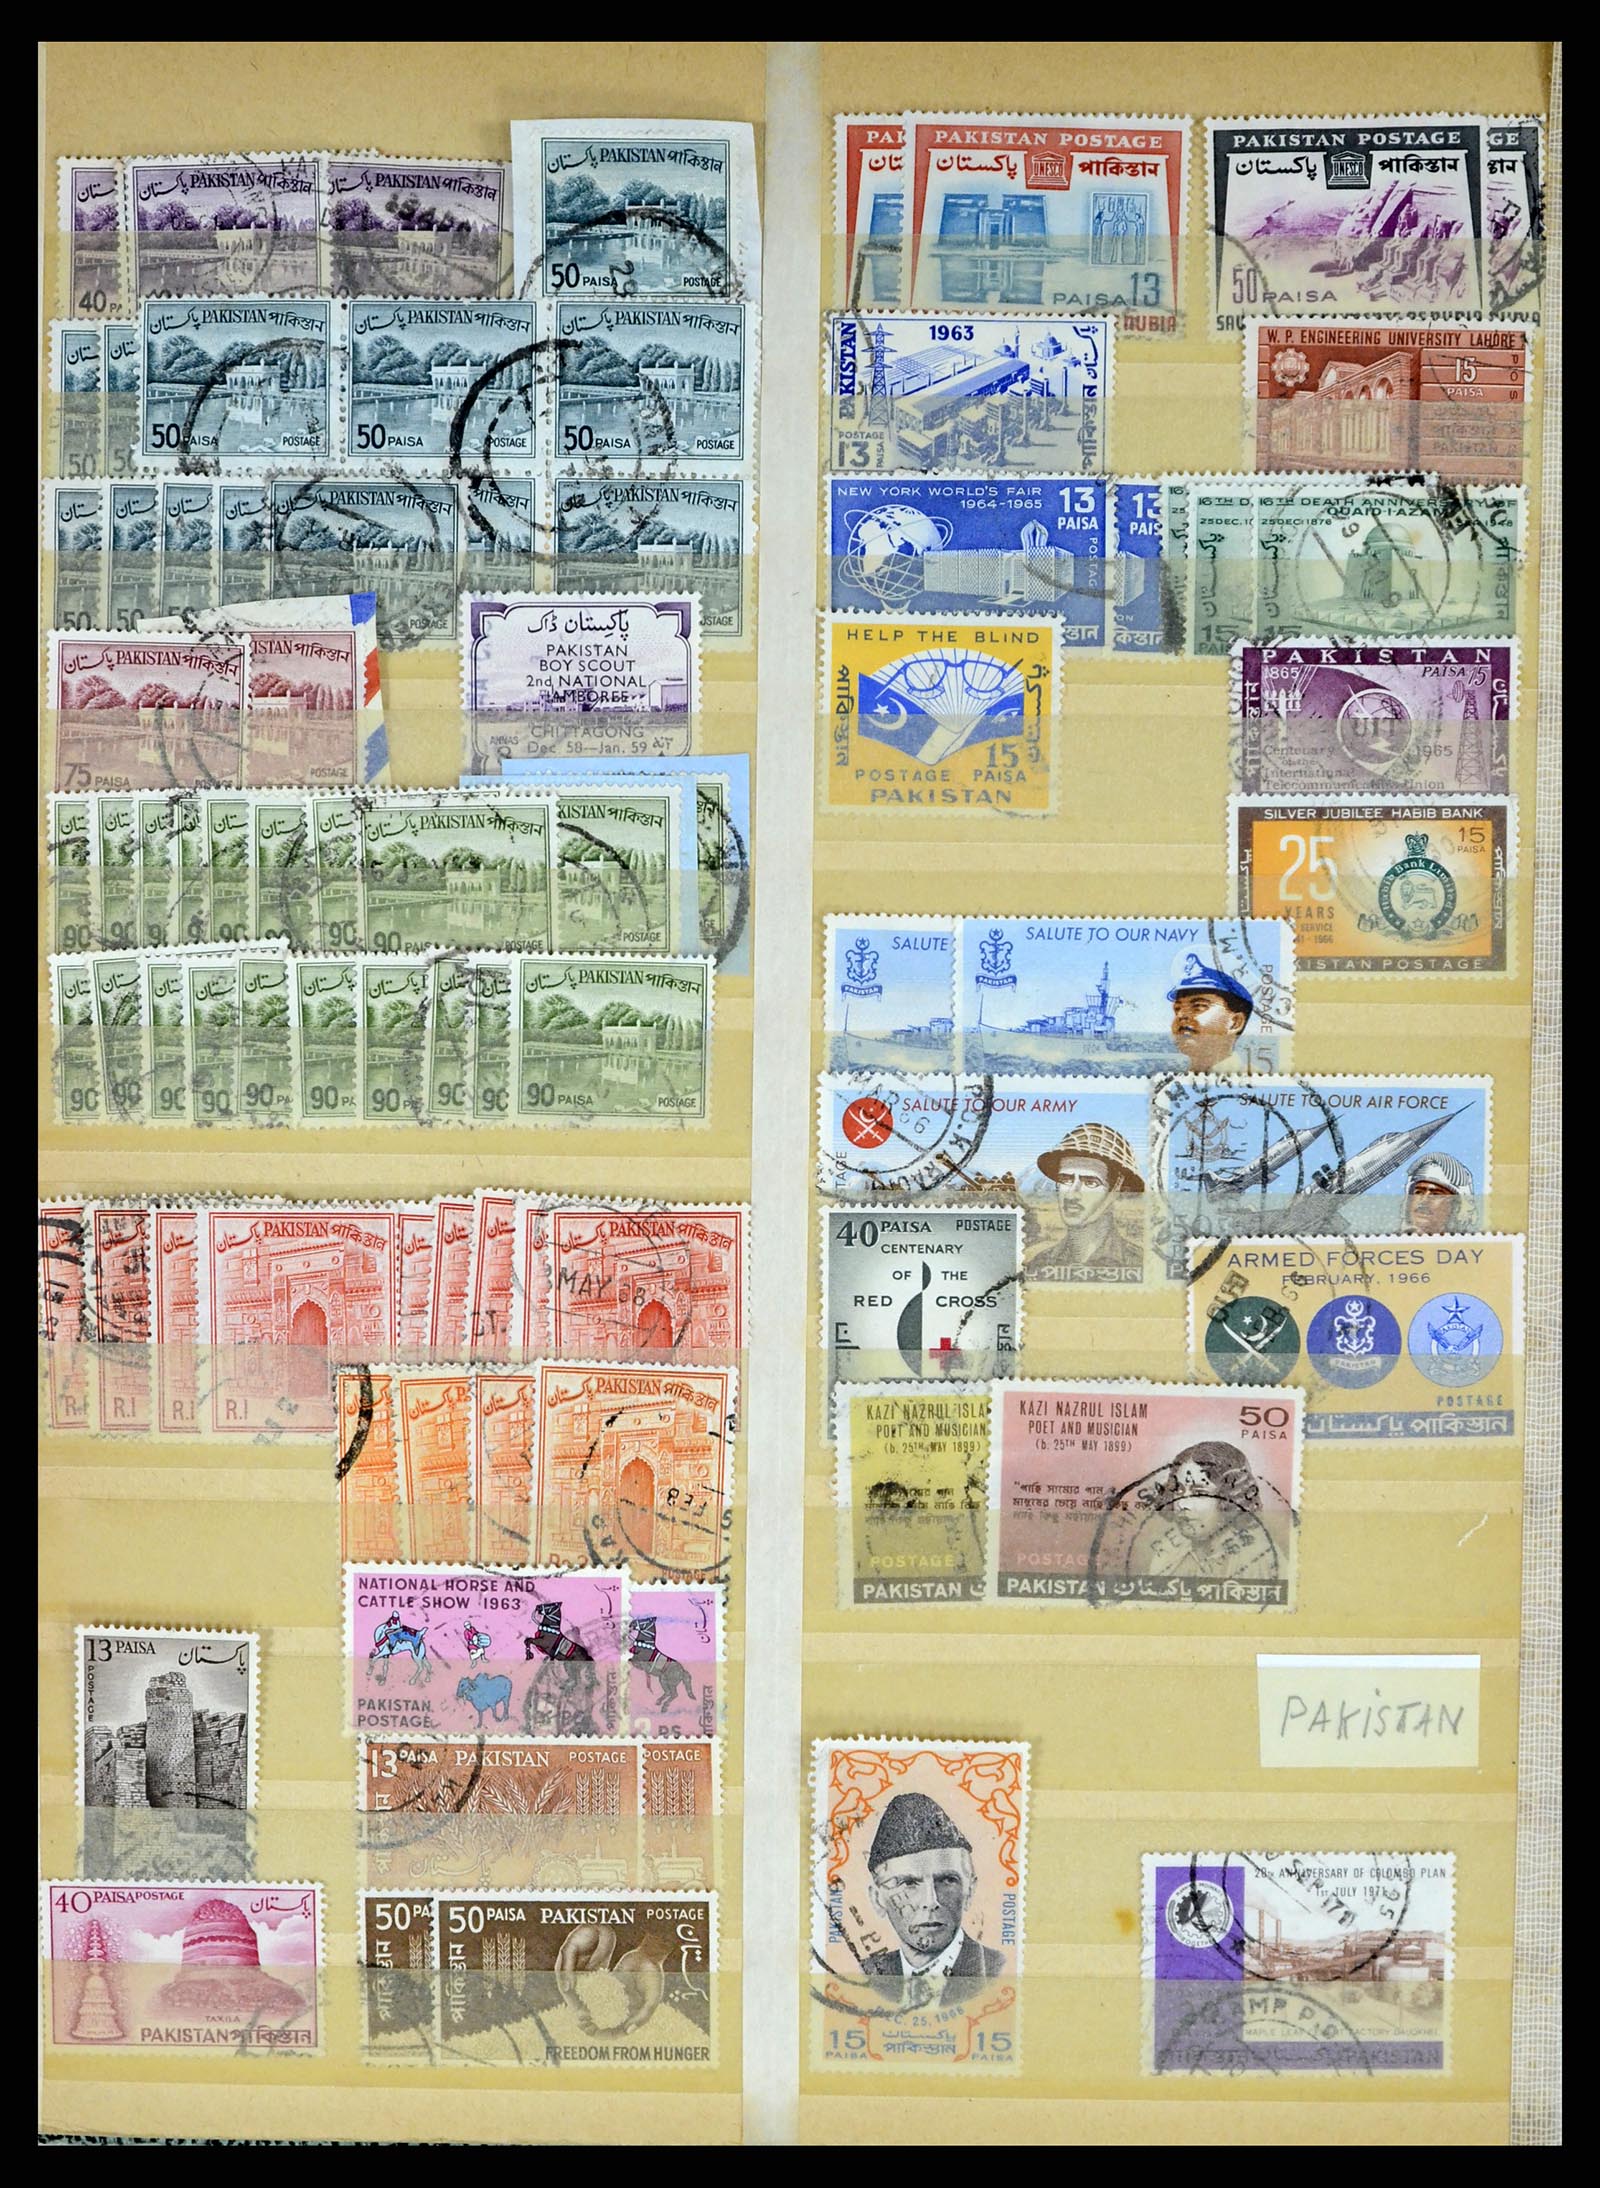 37619 325 - Stamp collection 37619 Pakistan/Bangladesh 1947-2000.